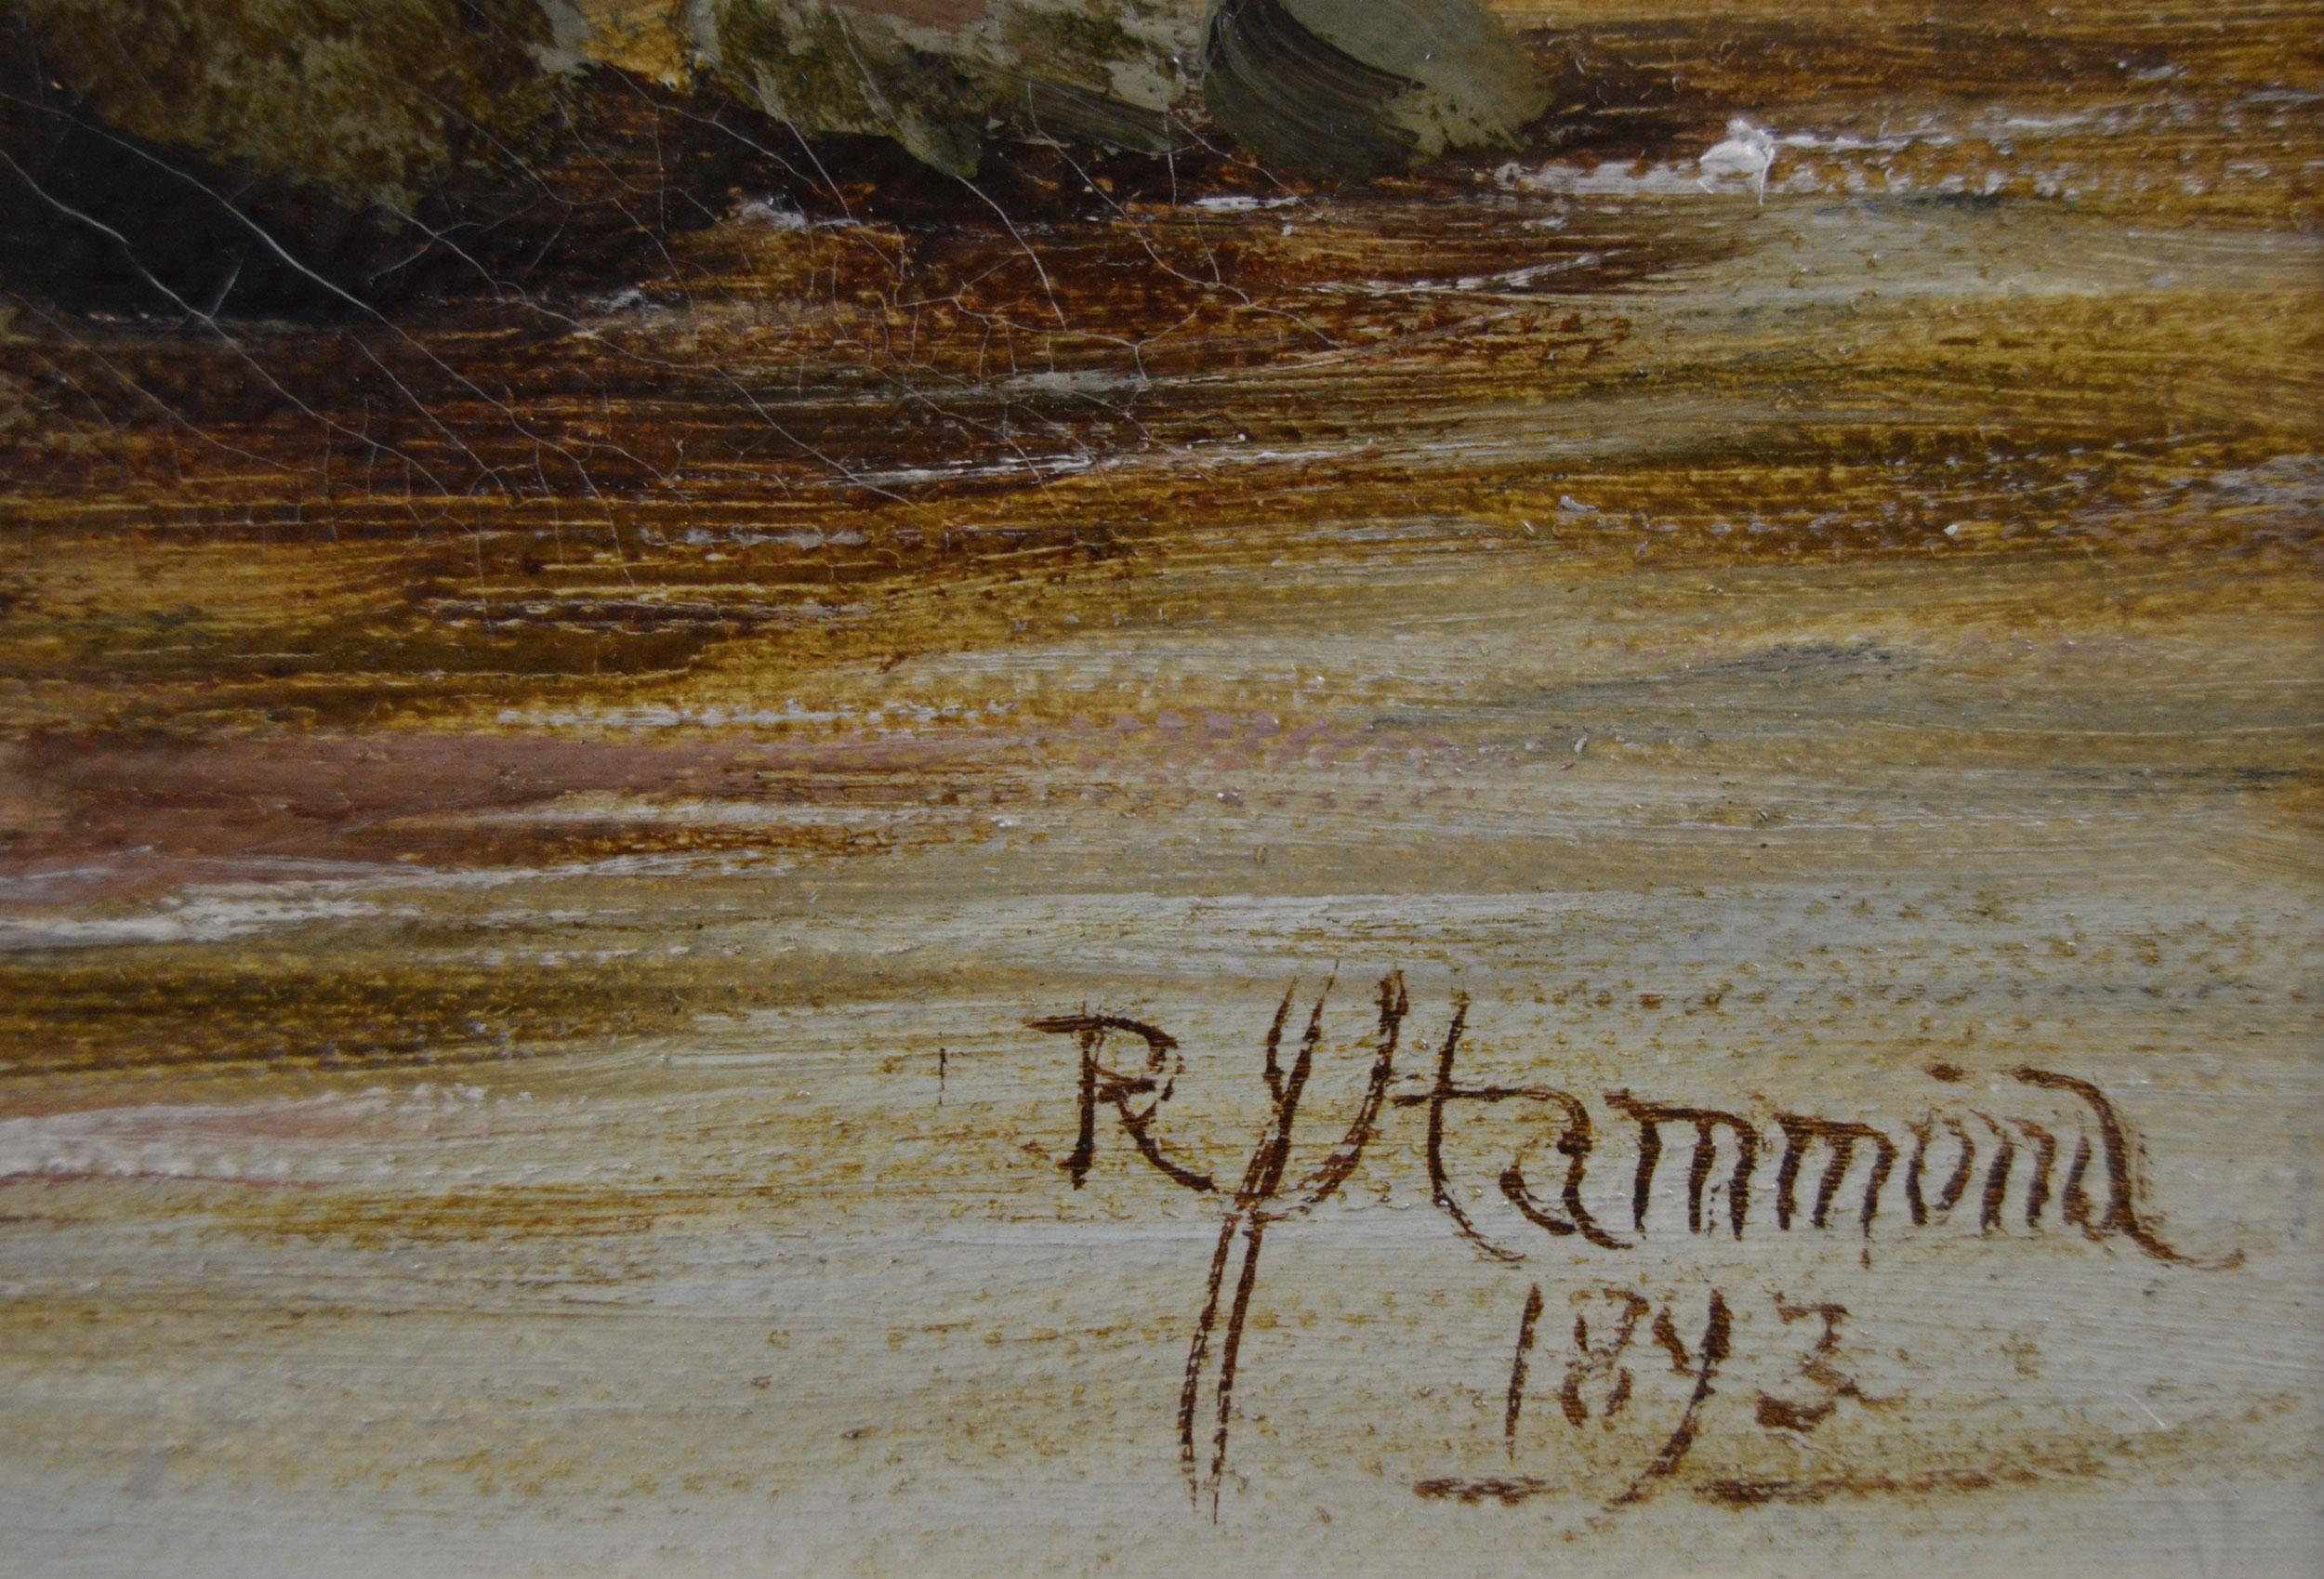 Robert John Hammond
Britannique, (1853-1911)
Pêche à la porte de l'écluse
Huile sur toile, signée et datée 1893
Taille de l'image : 19,5 pouces x 14,5 pouces 
Dimensions, y compris le cadre : 25,75 pouces x 20,75 pouces

Peinture pittoresque de